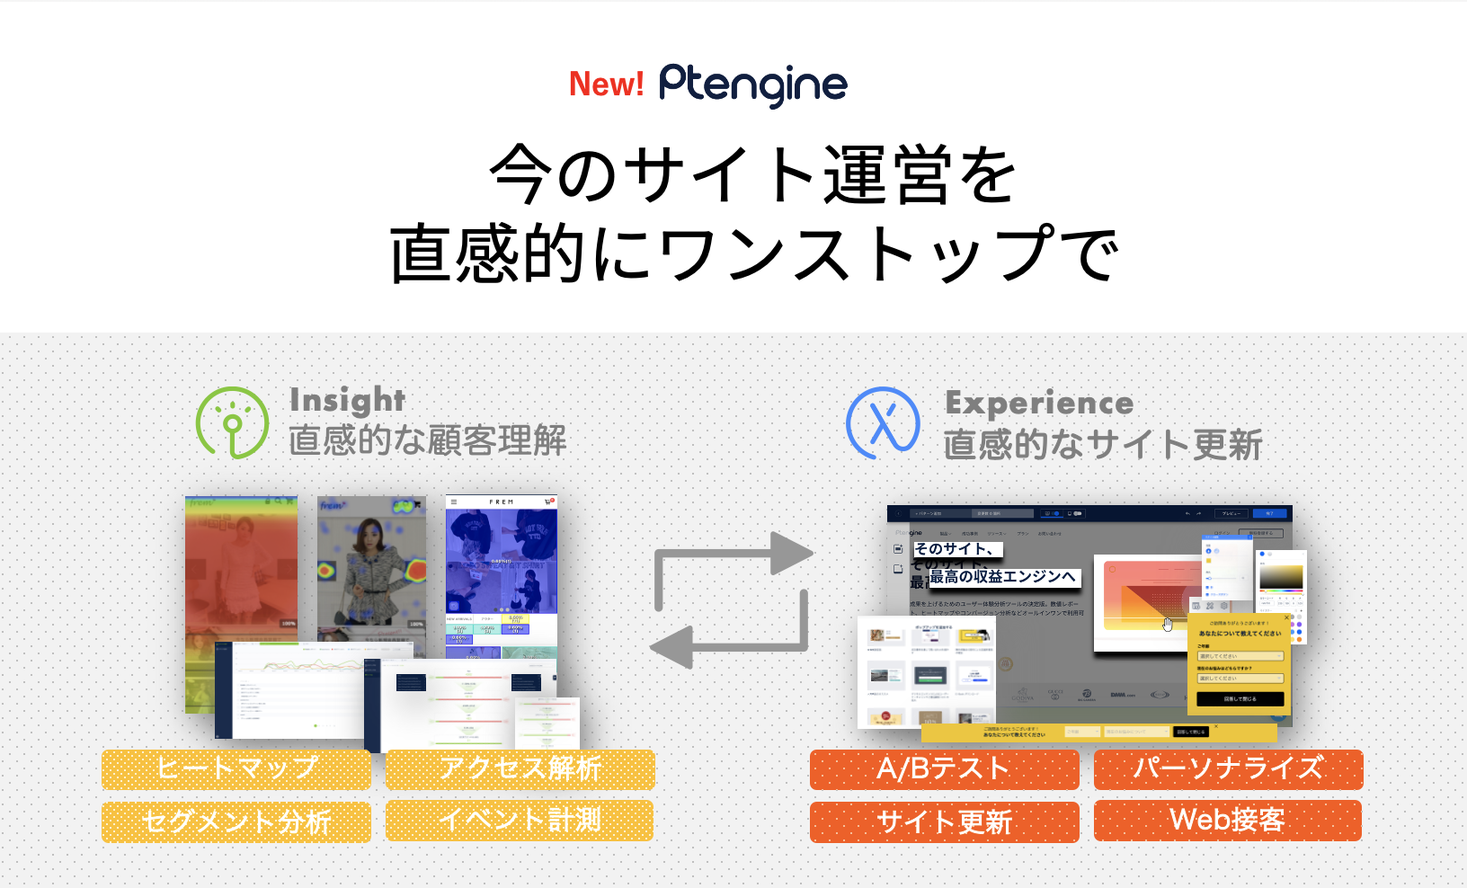 サイト運営プラットフォーム Ptengine Web接客など 新機能の 型拡張に続いて 額4 980円 新料 プラン提供開始へ 株式会社ptmindのプレスリリース